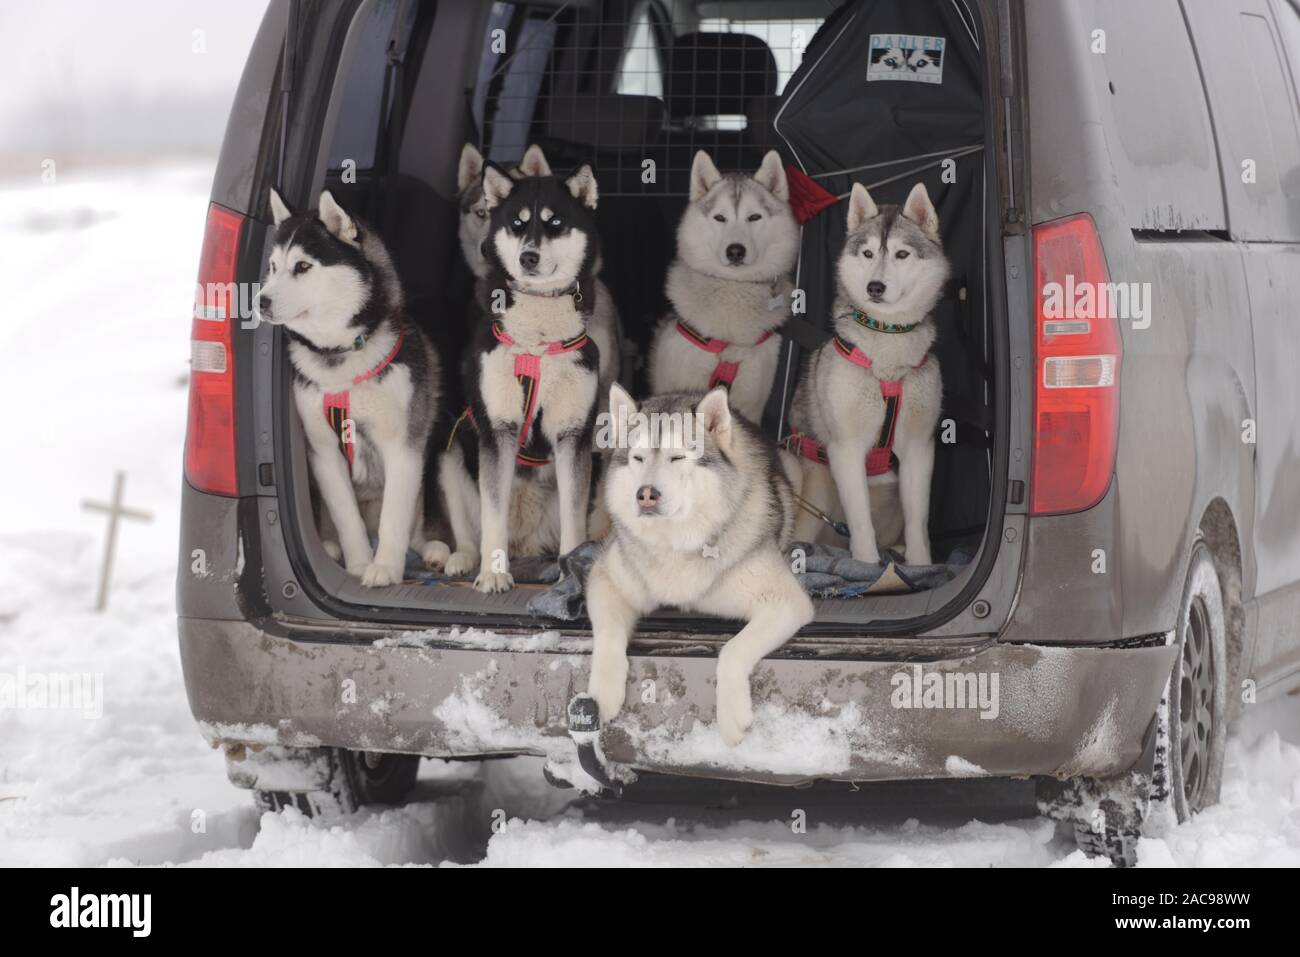 L'équipe de 6 chiens de traîneau de malamutes et hasky en attente dans une voiture pour le début des compétitions Banque D'Images